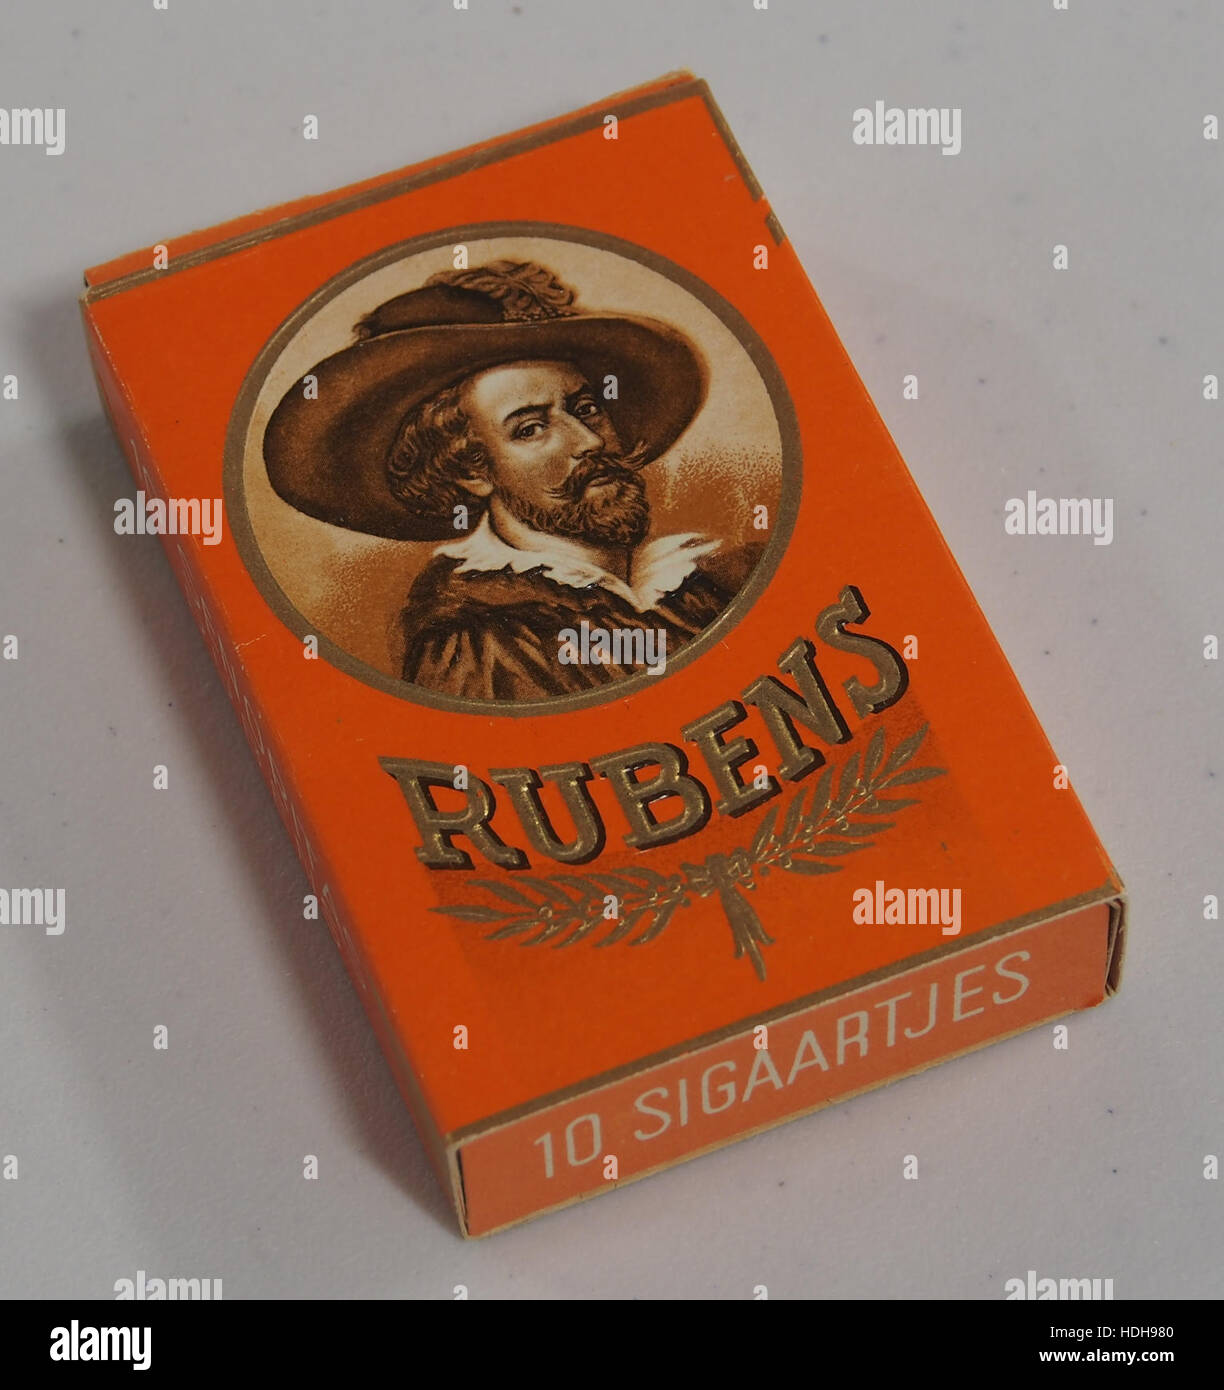 Rubens sigaartjes pak pic7 Banque D'Images